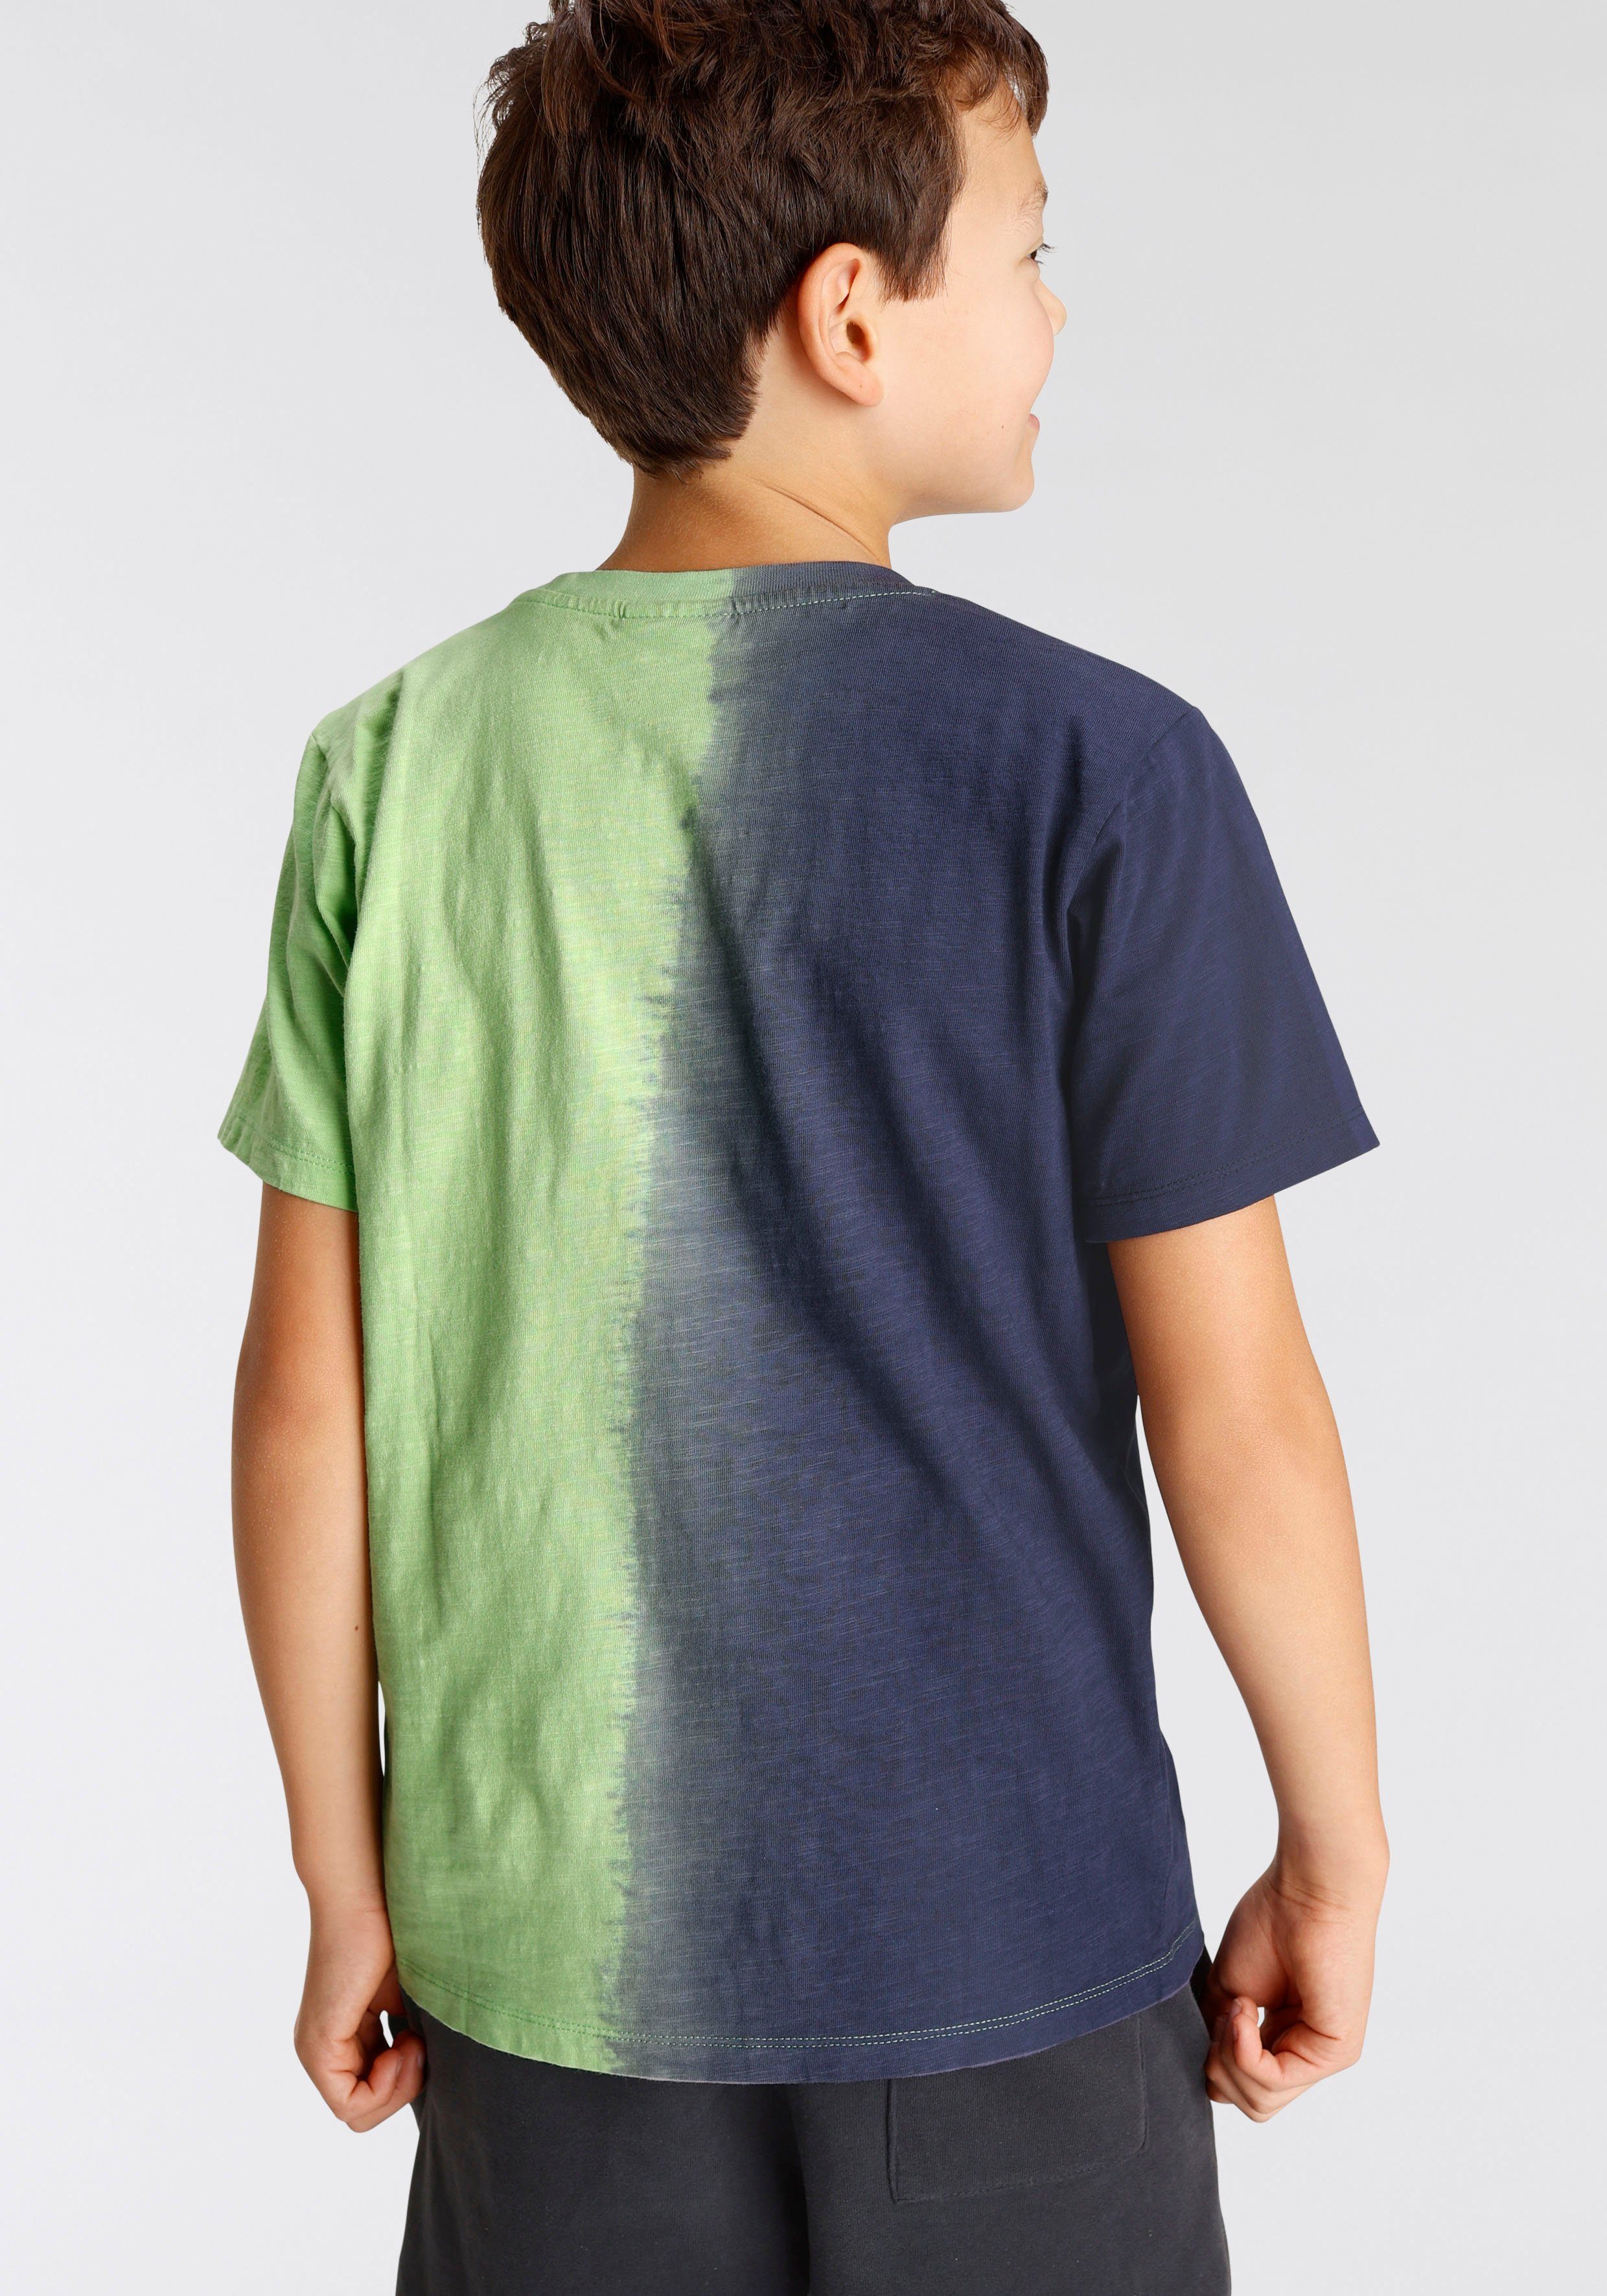 vertikalem Farbverlauf T-Shirt Farbverlauf Chiemsee mit